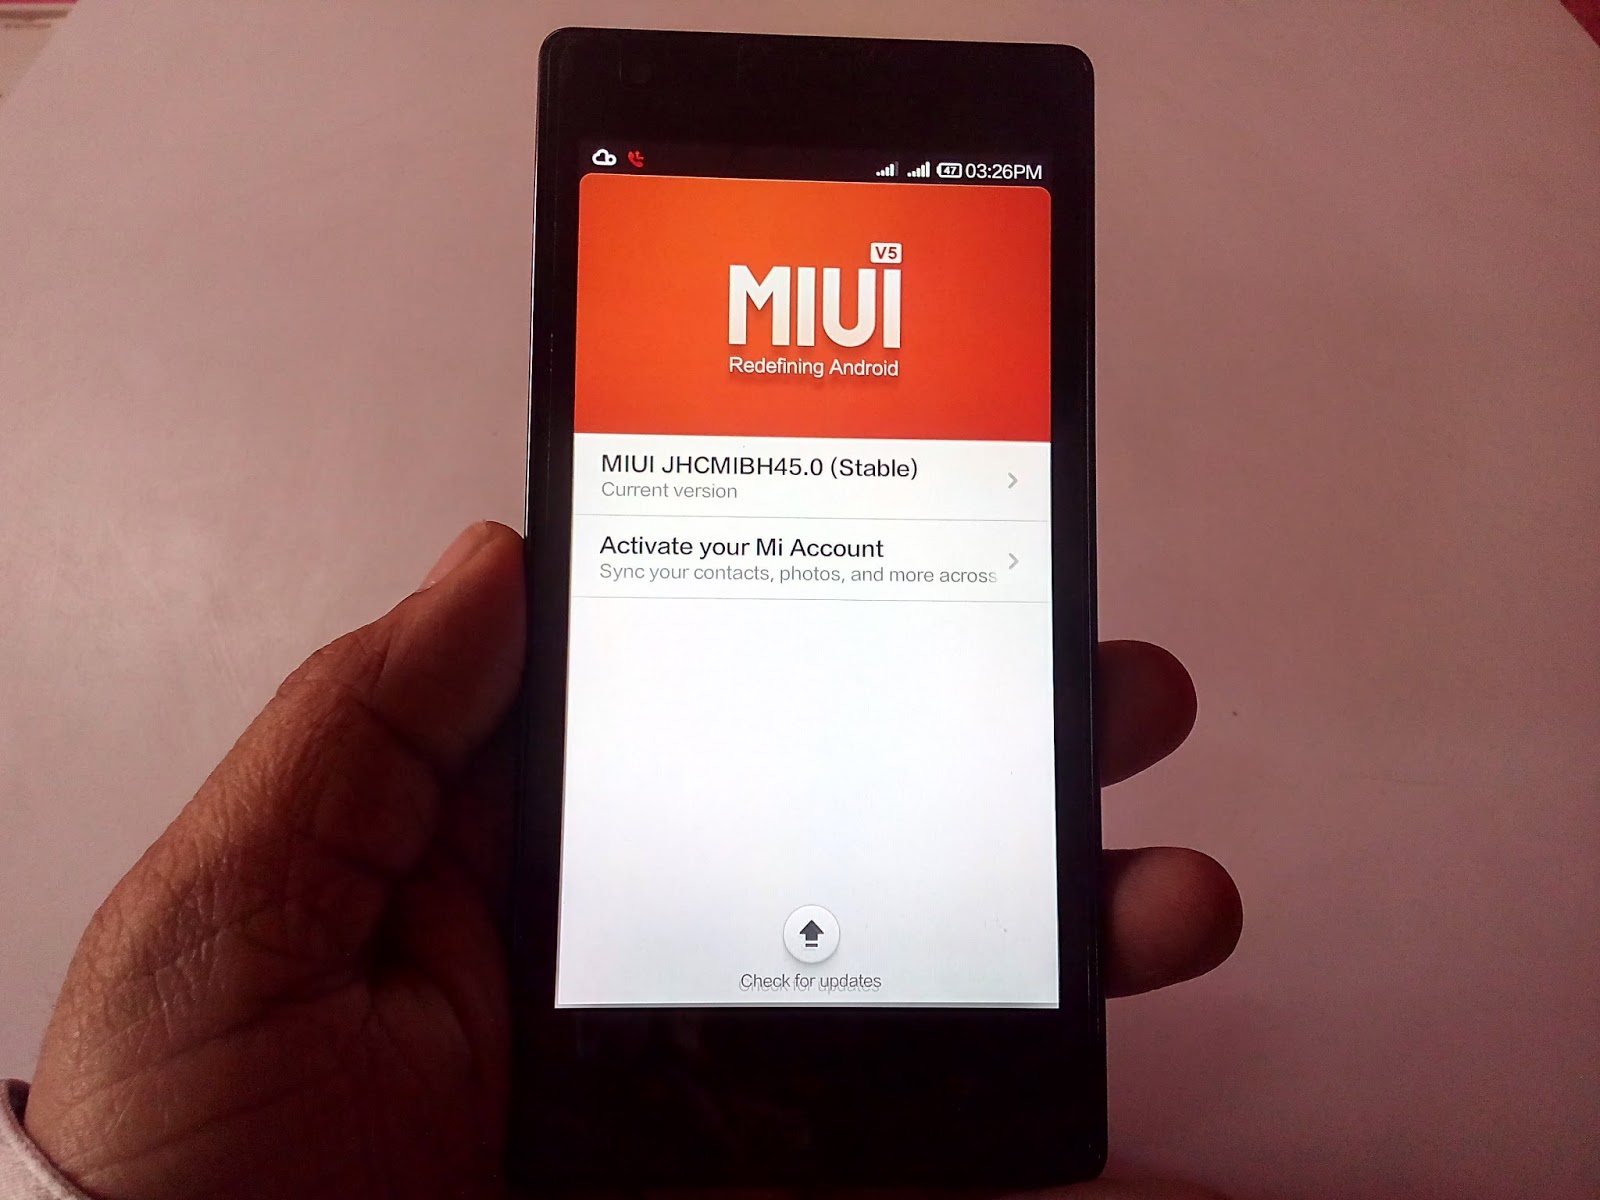 Update Latest MIUI for (Redmi 1S/ Redmi Note 4G/Mi3, /Mi Note)